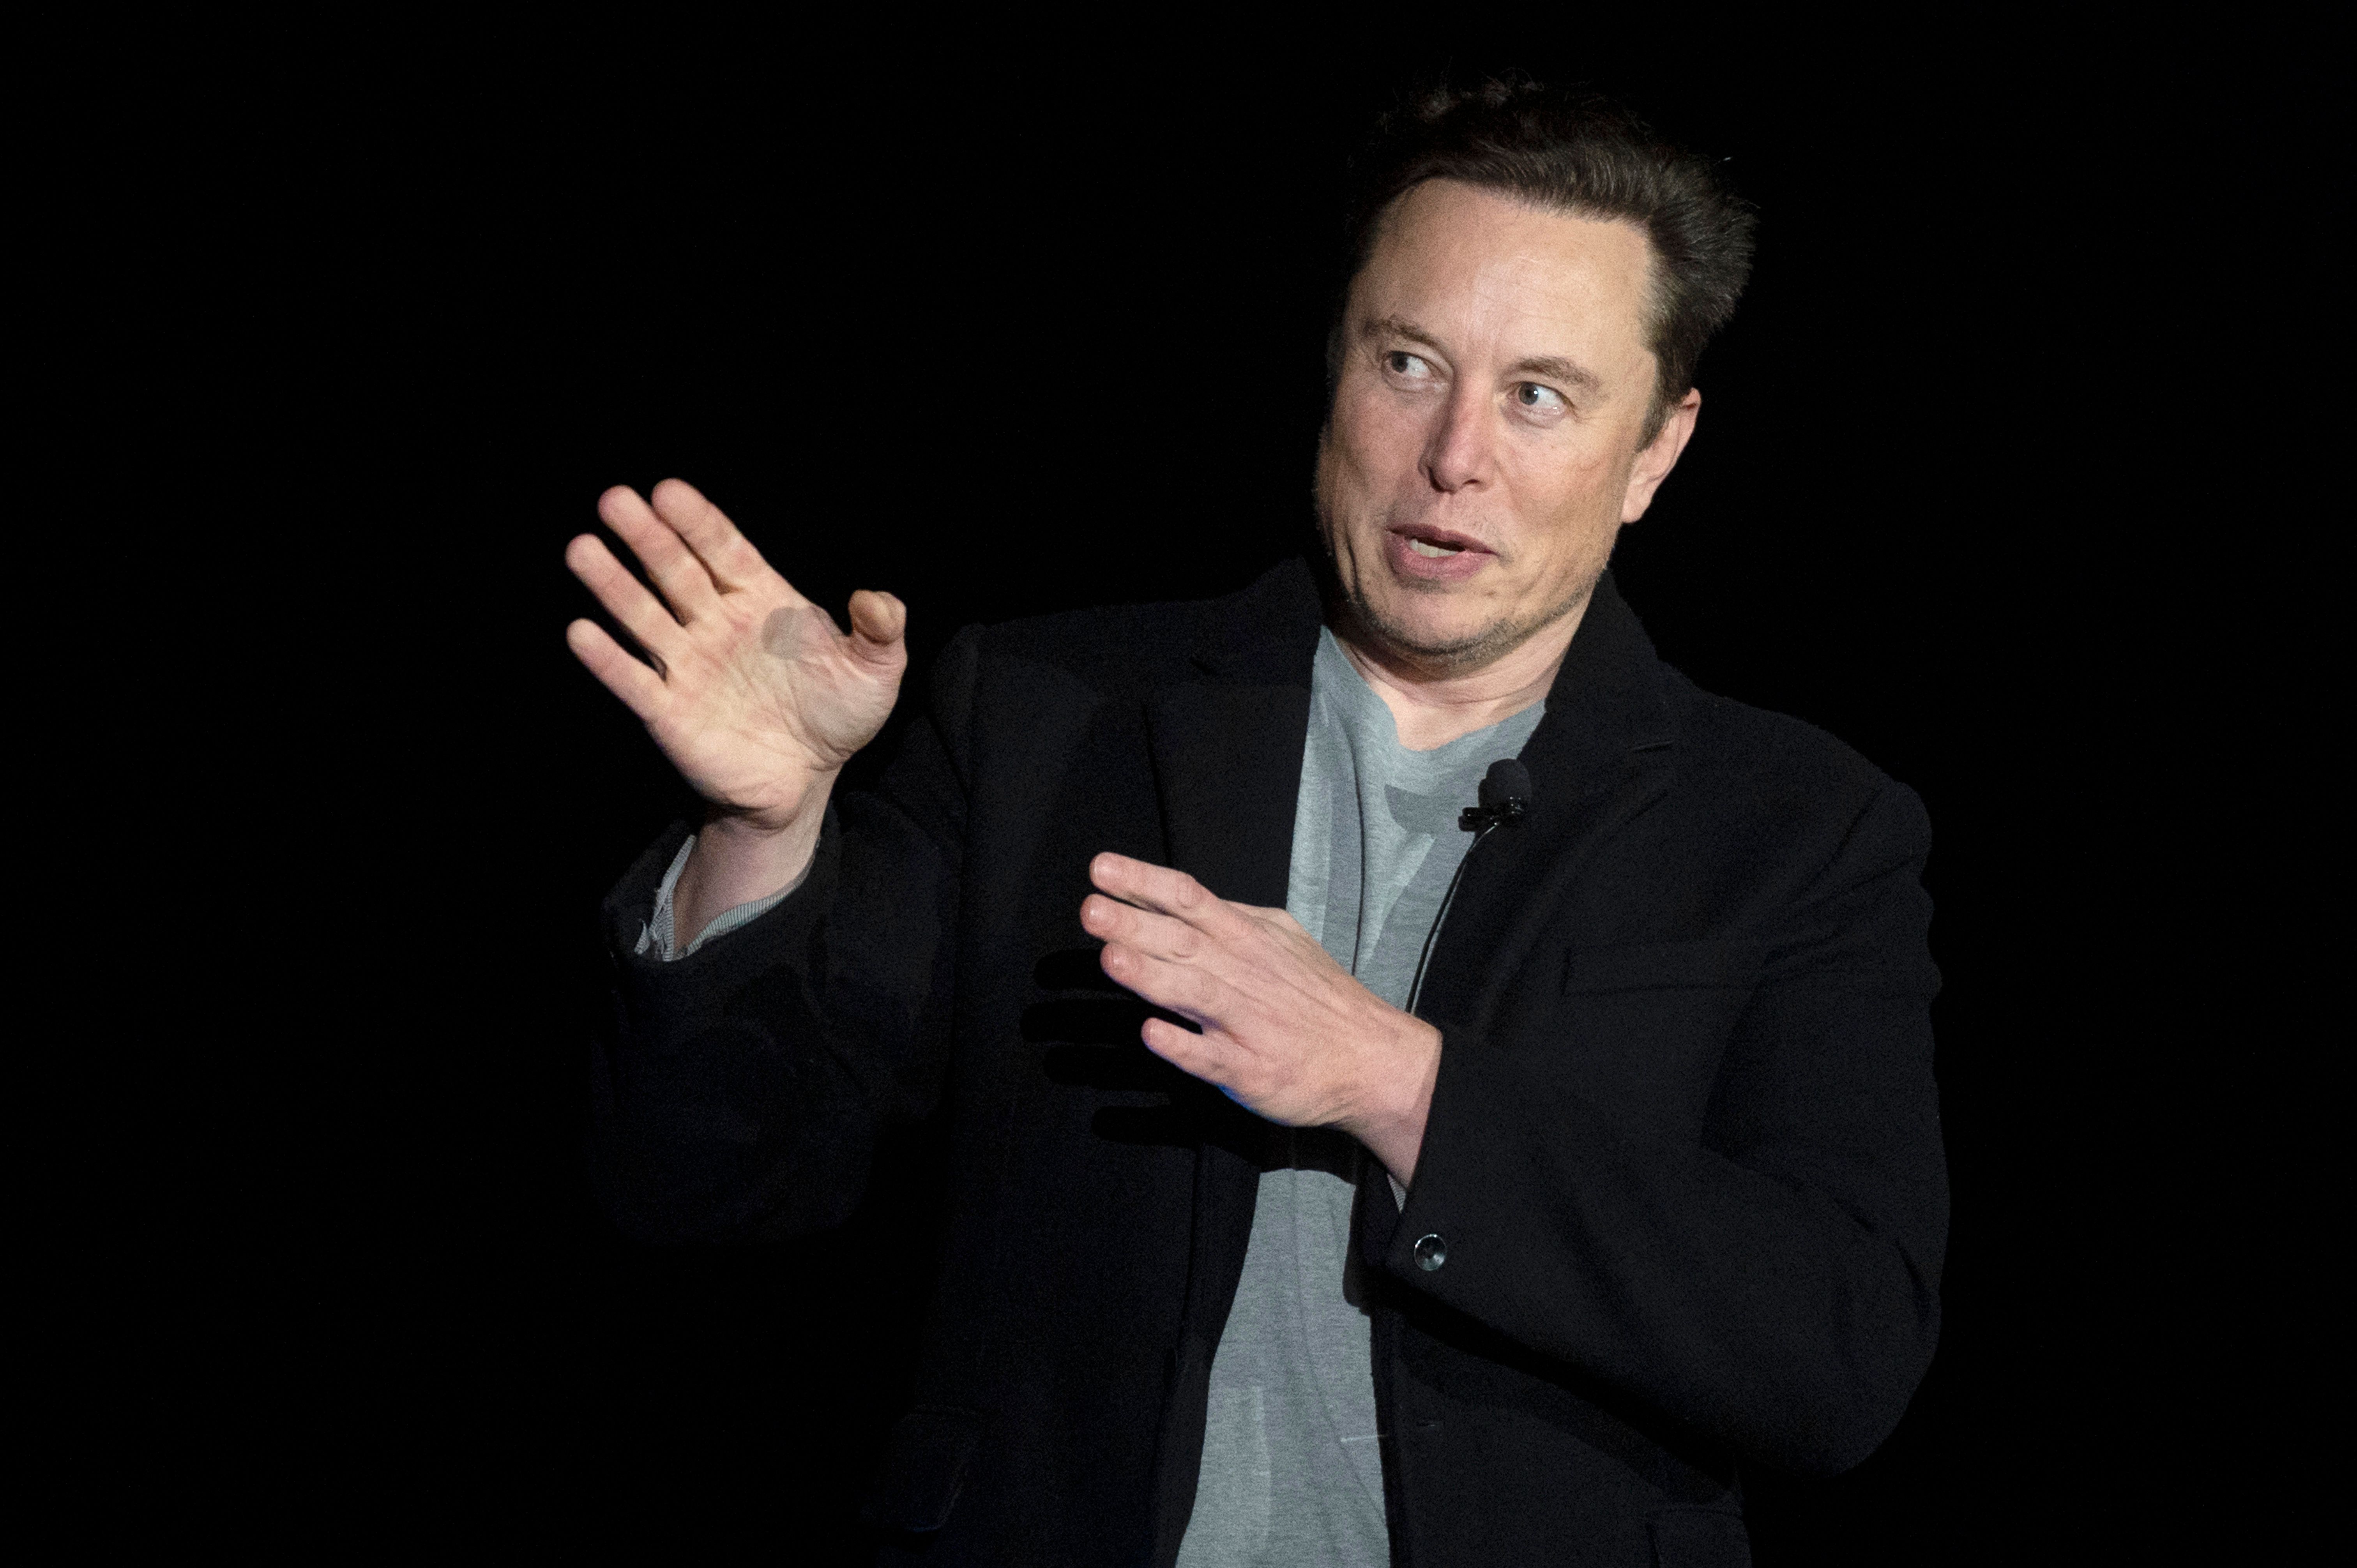 Tesla shares plummet after Elon Musk's successful bid for Twitter